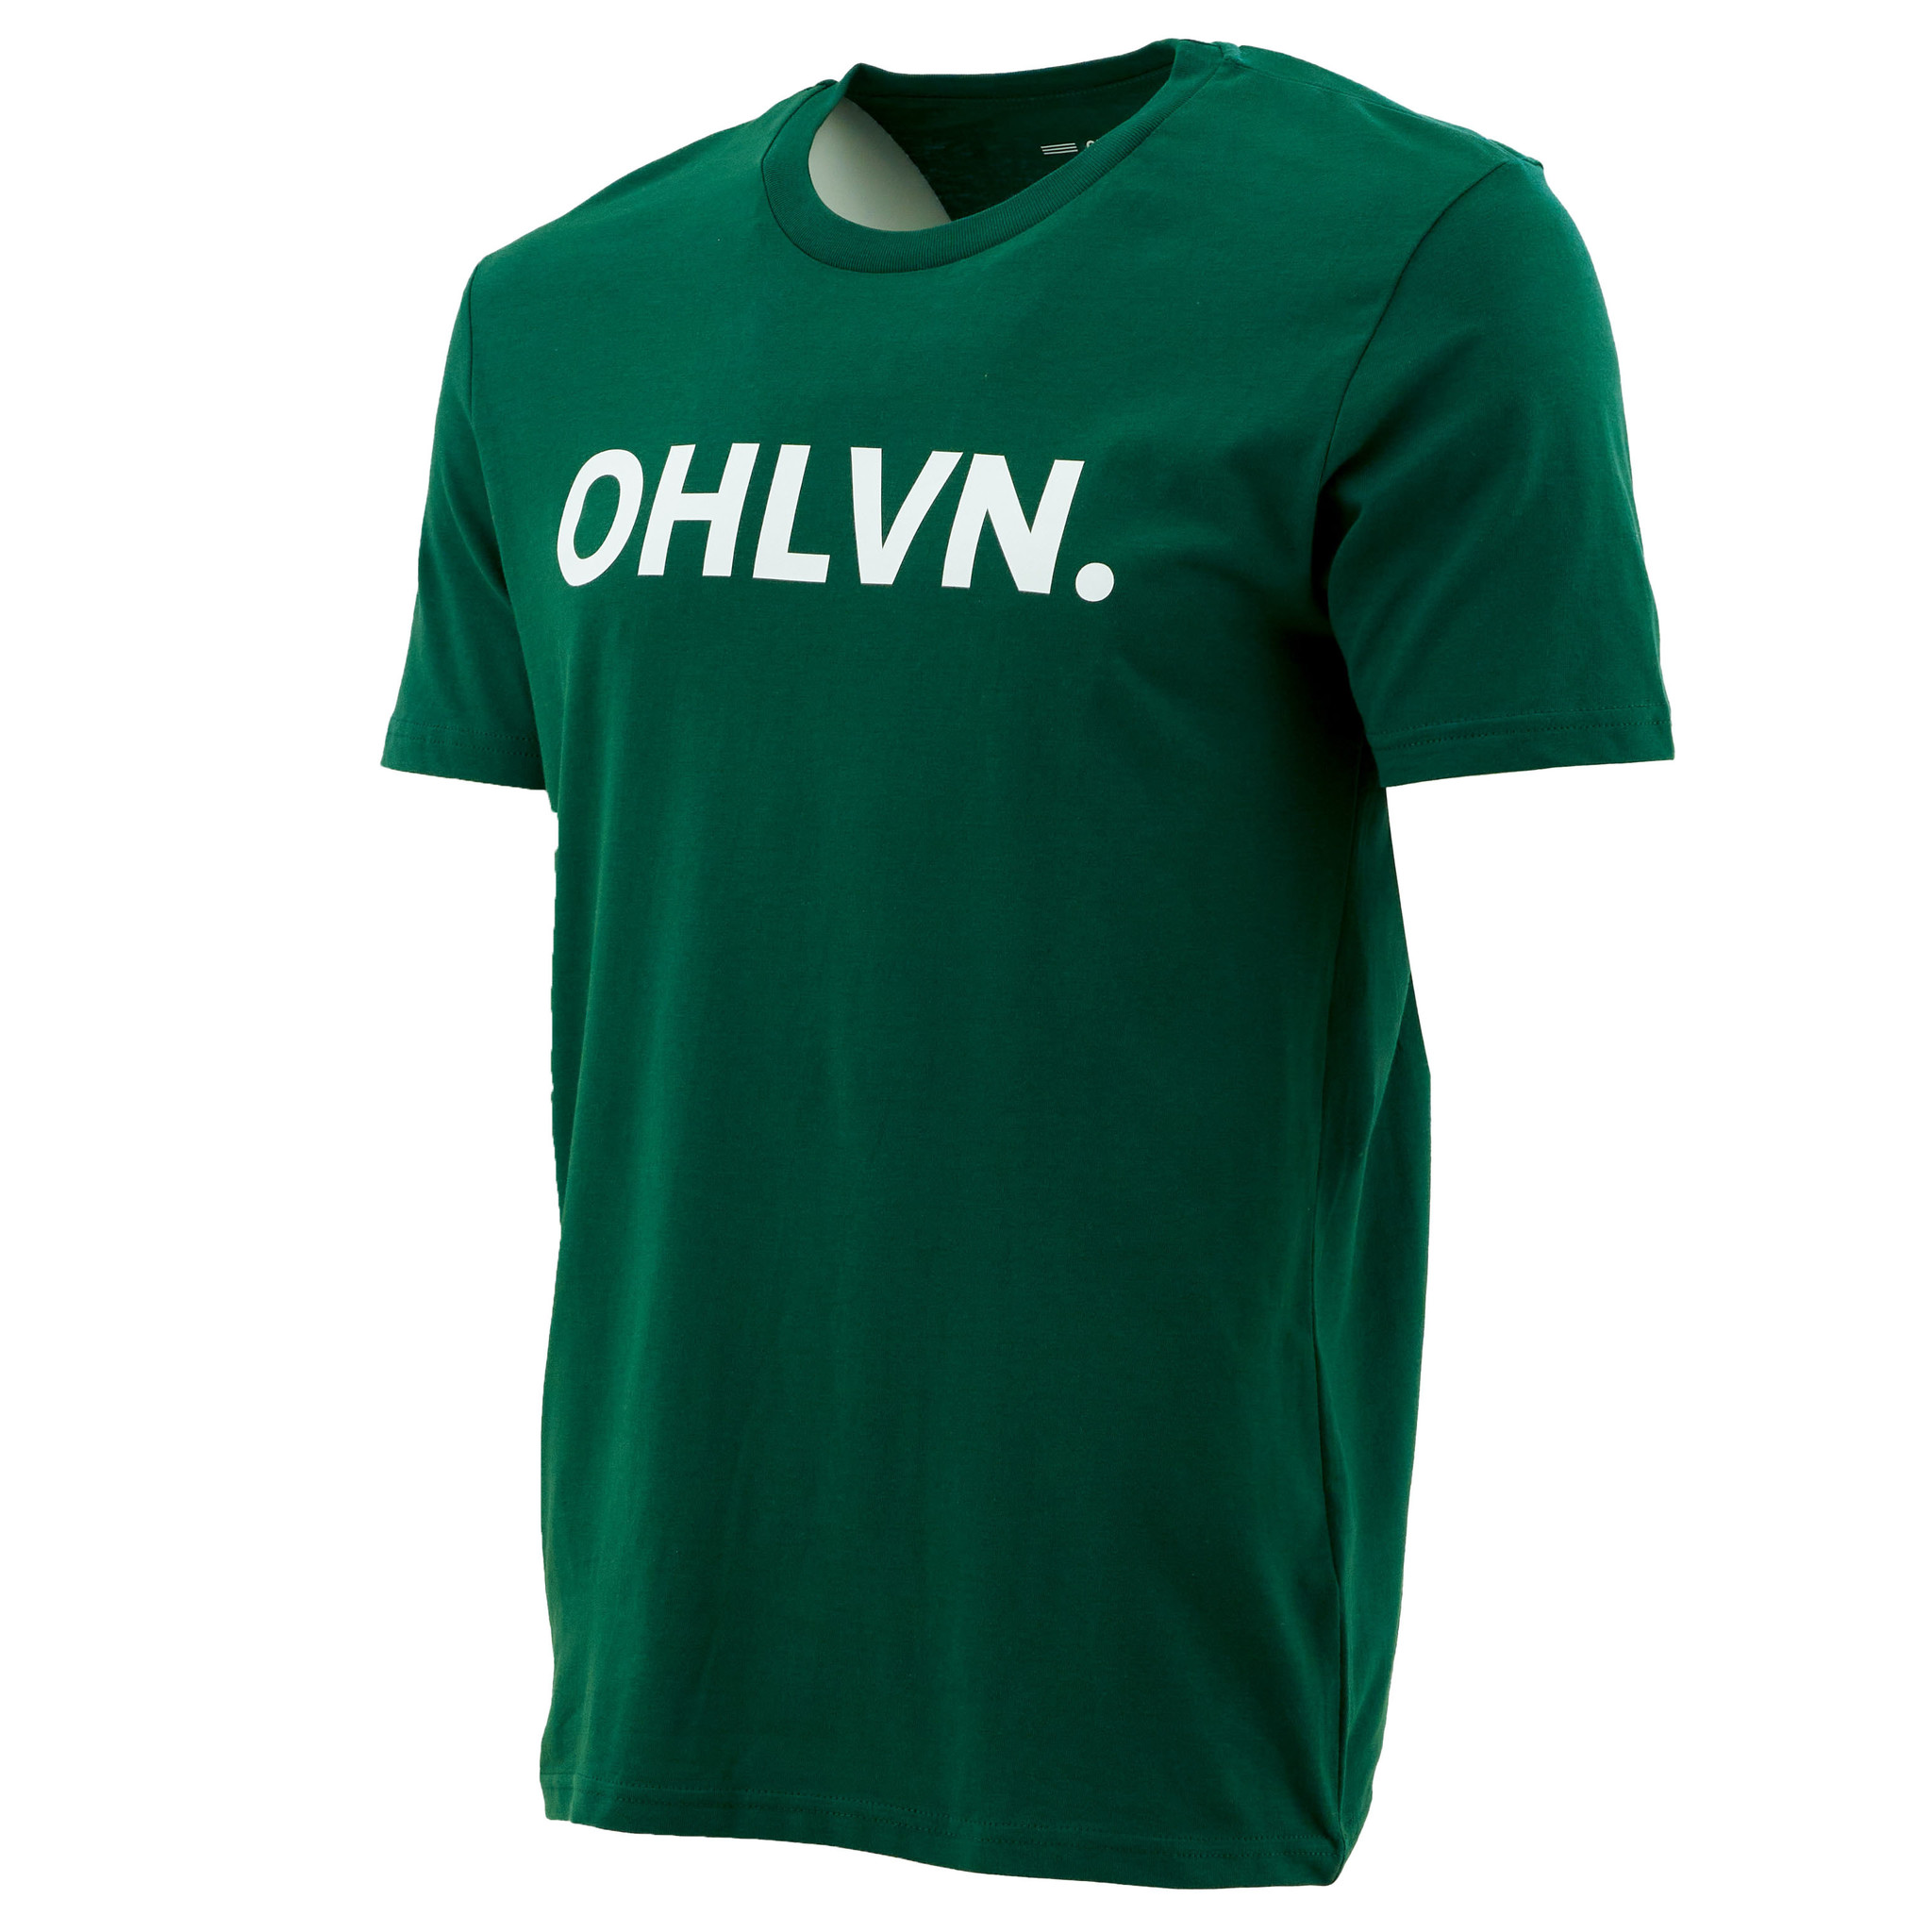 Topfanz T-shirt groen OHLVN.